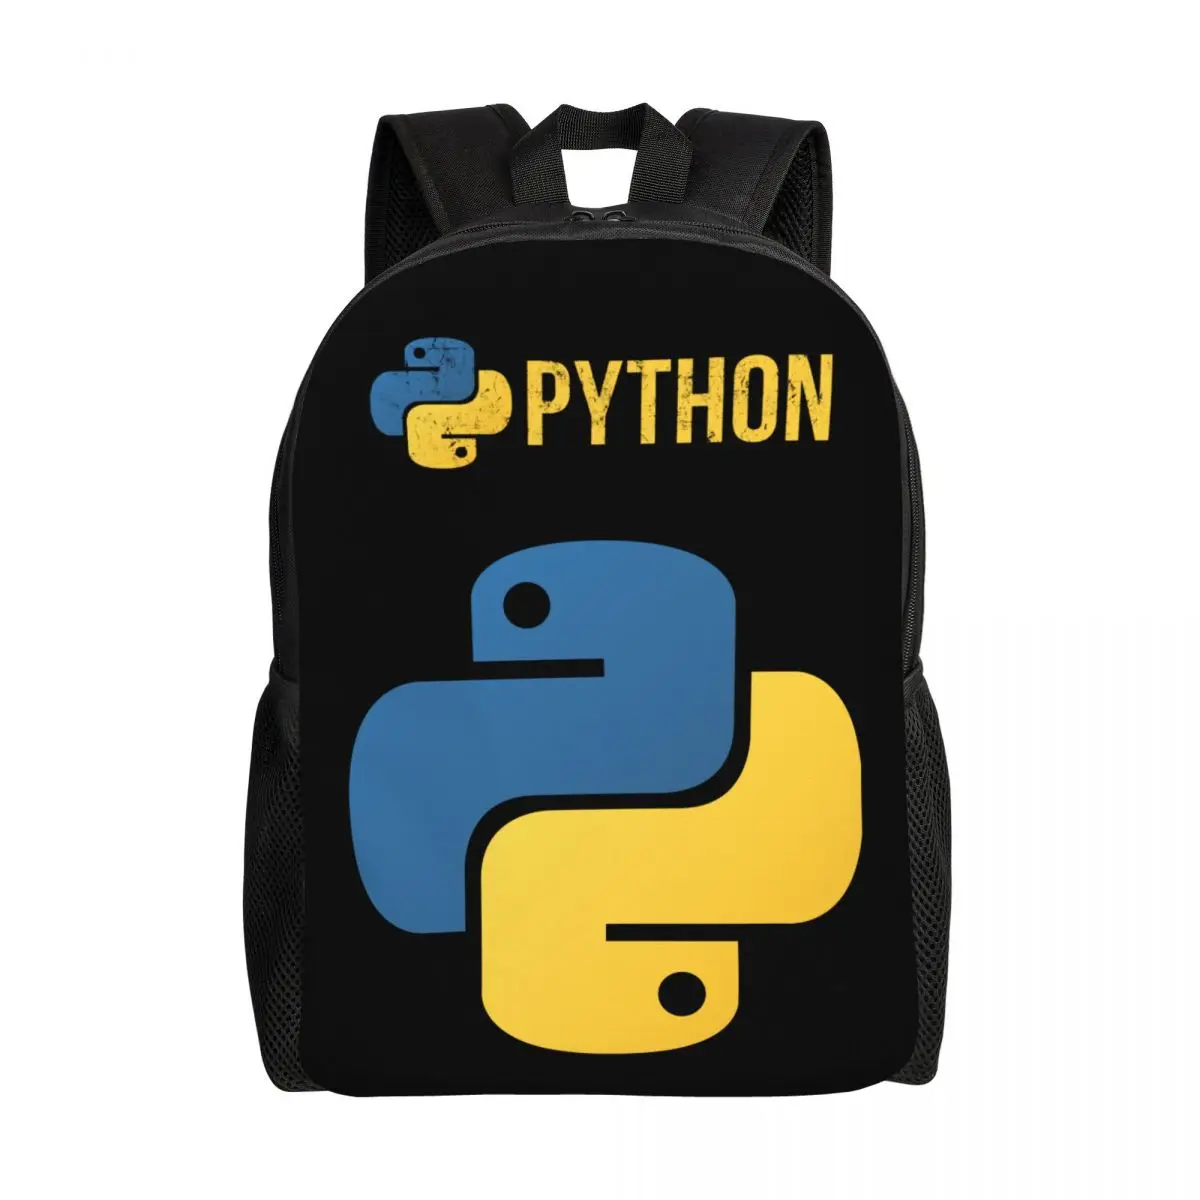 

Python Programmer Laptop Backpack Women Men Fashion Bookbag for School College Students Distressed Developer Bag